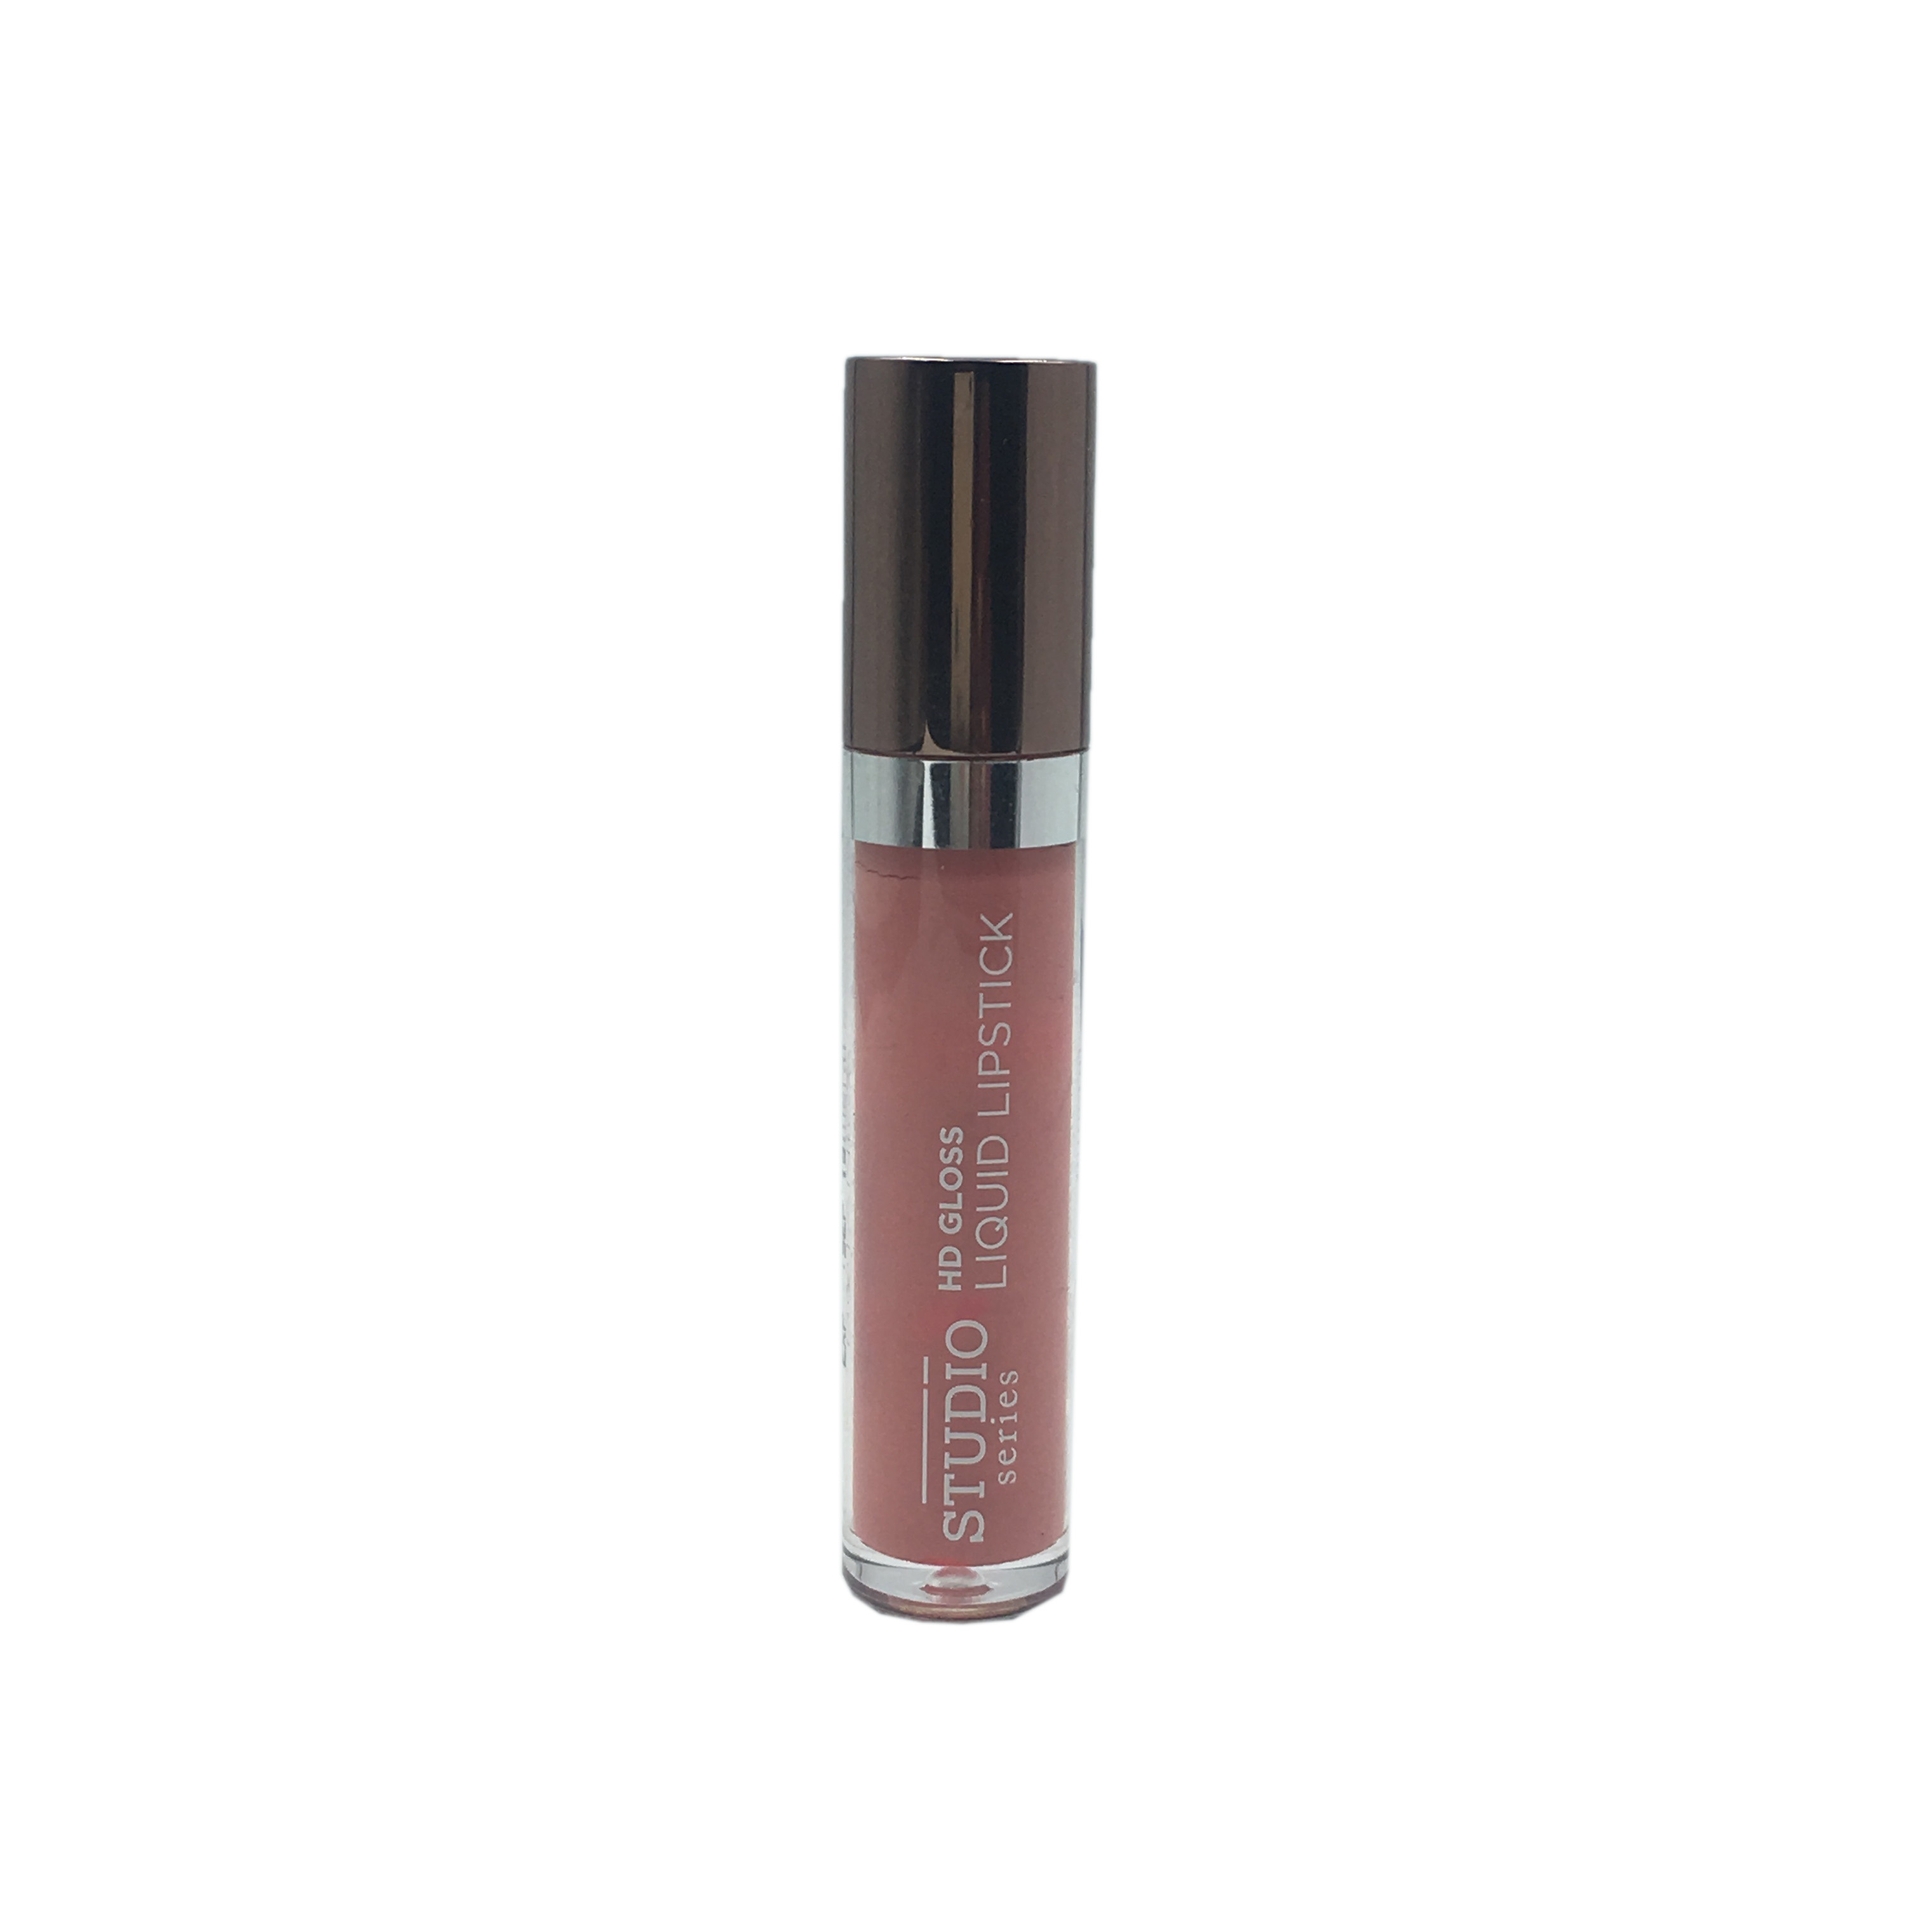 Mineral Botanica 009 Miss Wonderfull Studio Series HD Gloss Liquid Lipstick Lips